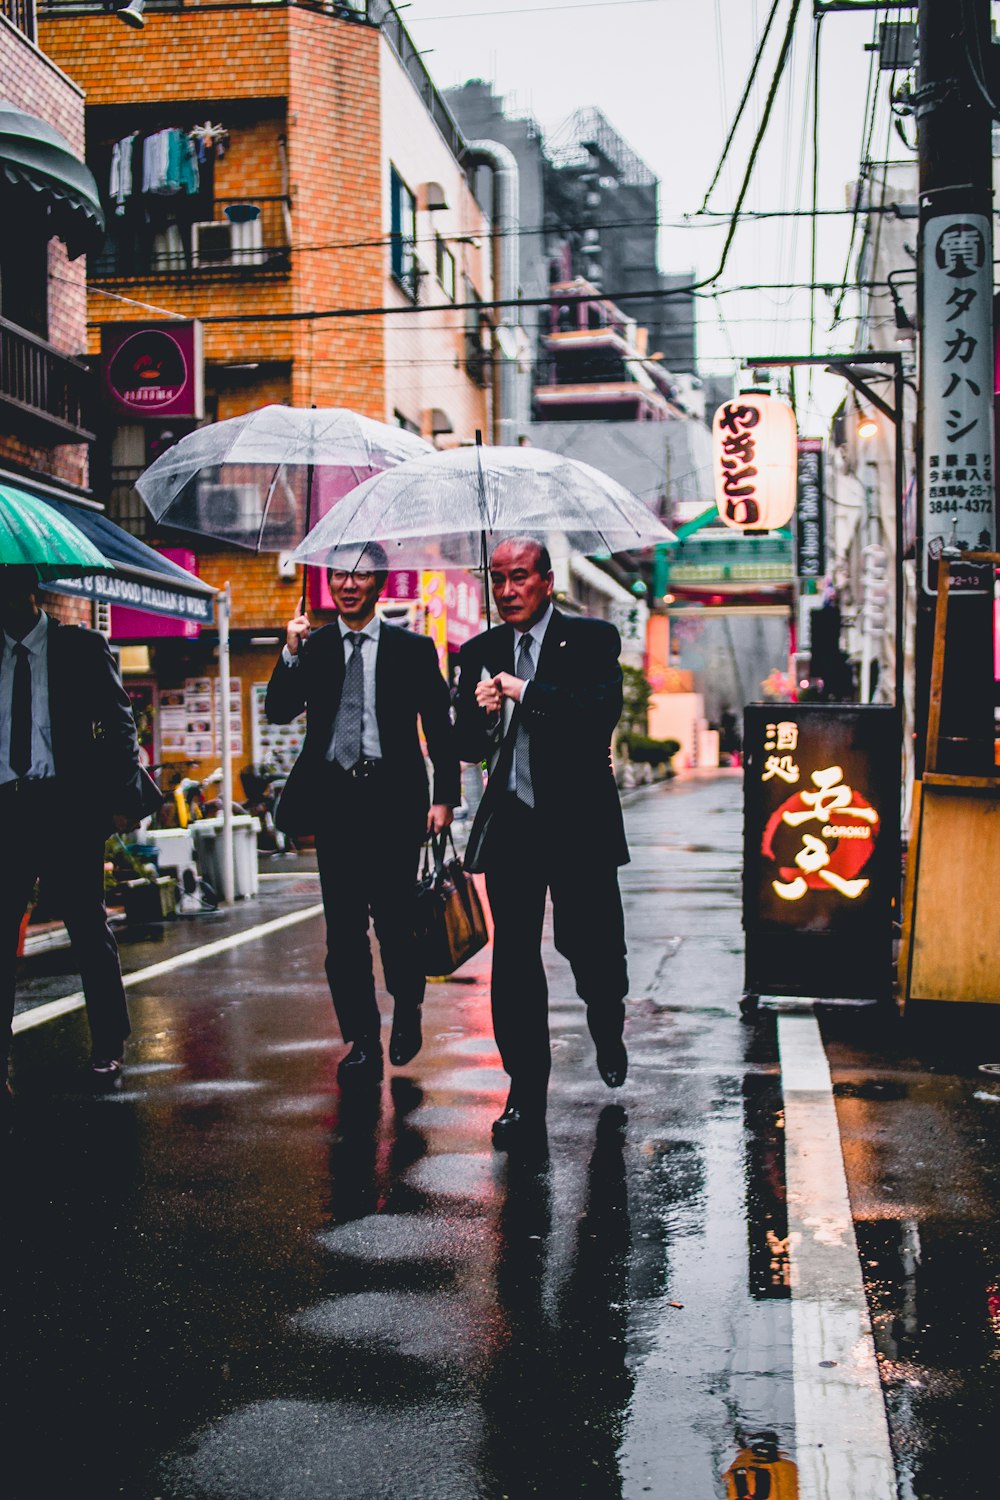 zwei Männer in schwarzem Anzug mit durchsichtigen Regenschirmen, die auf der Straße spazieren gehen